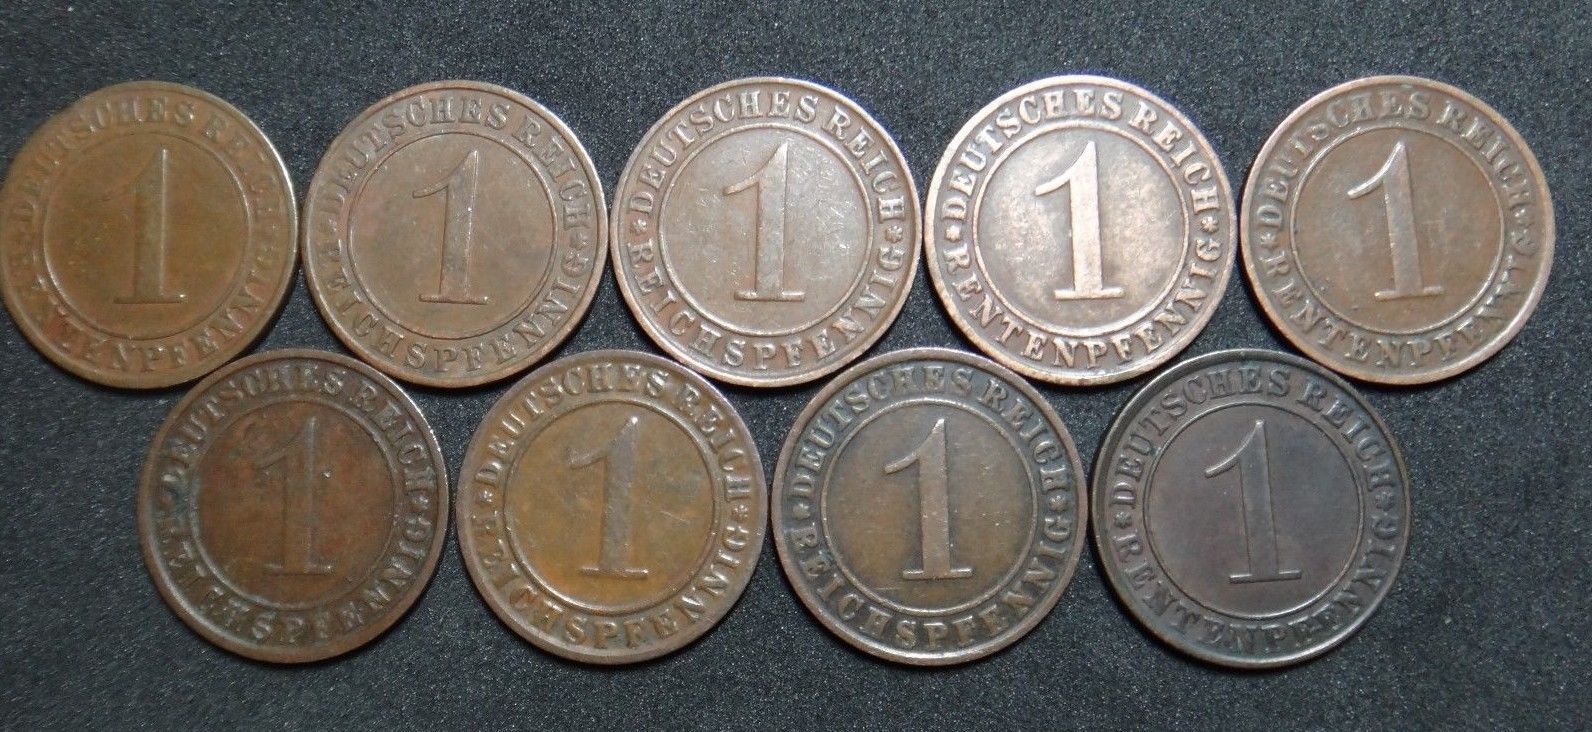 GERMANY 1 RENTENPFENNIG AND REICHSPFENNIG 9 COINS 1924 A - J  WEIMAR RARE LOT XF - $55.78